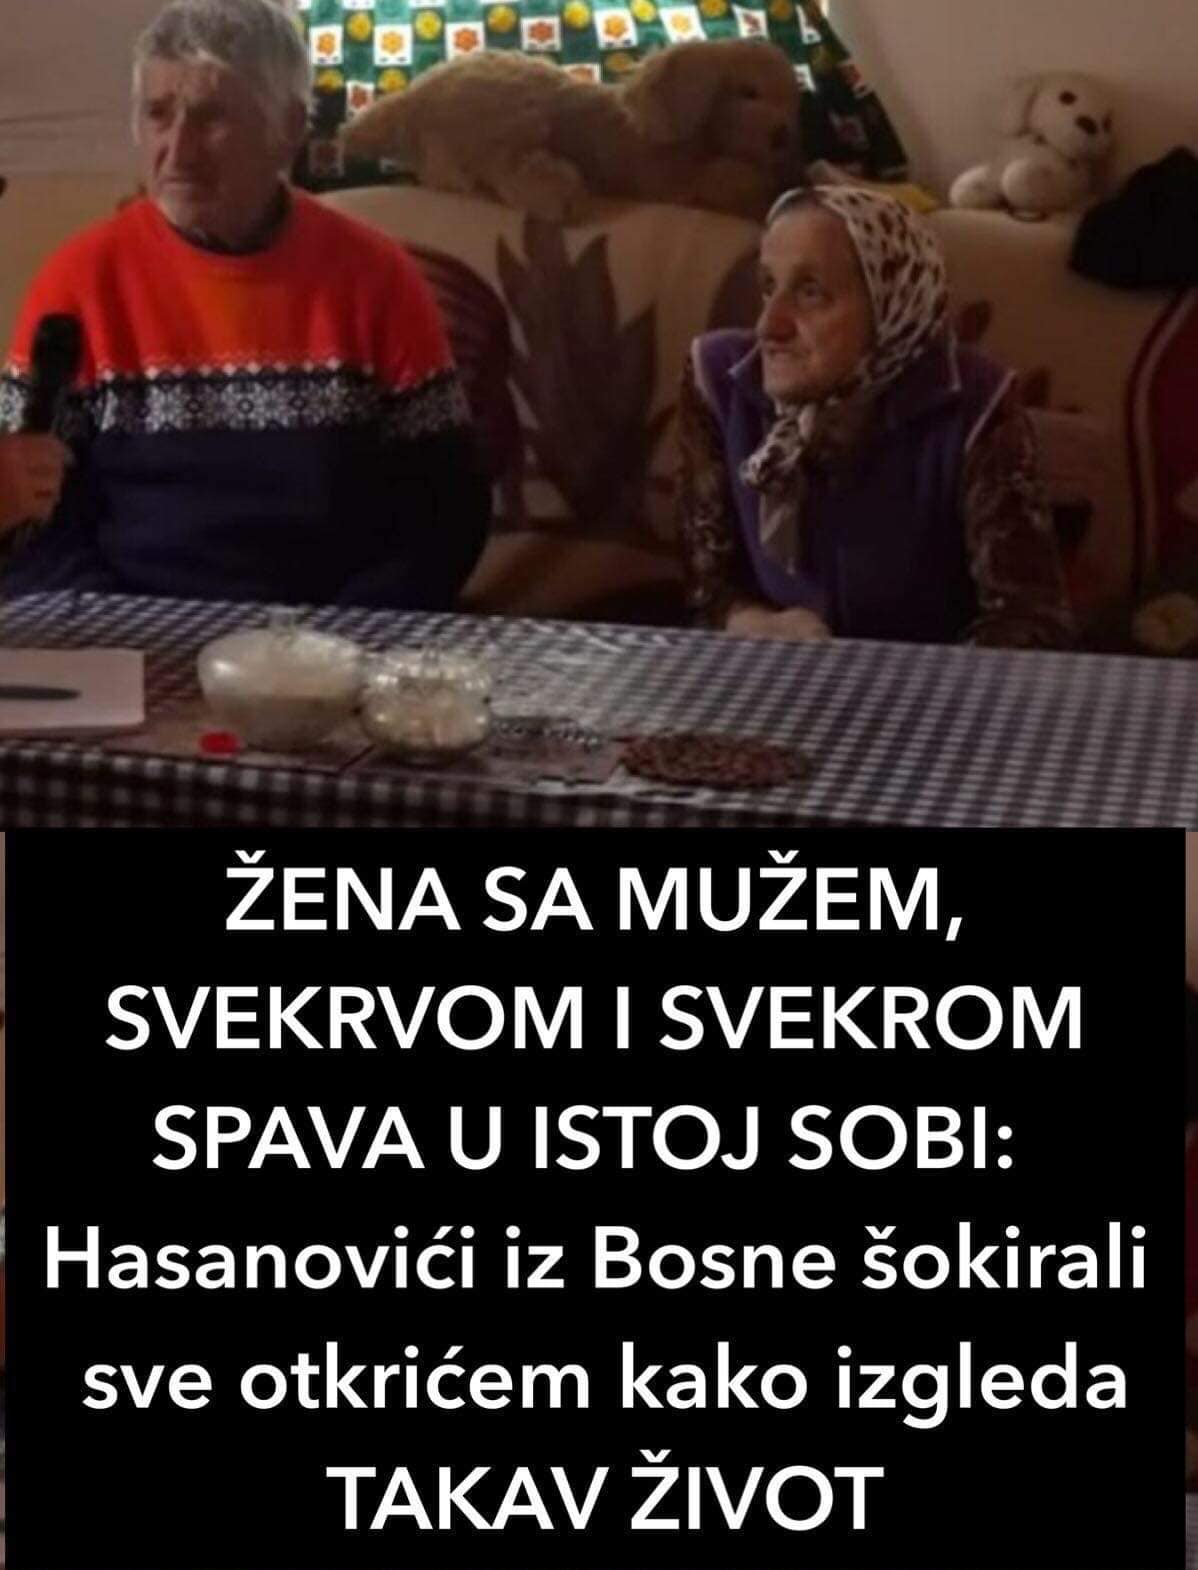 ŽENA SA MUŽEM, SVEKRVOM I SVEKROM SPAVA U ISTOJ SOBI: Hasanovići iz Bosne šokirali sve otkrićem kako izgleda TAKAV ŽIVOT